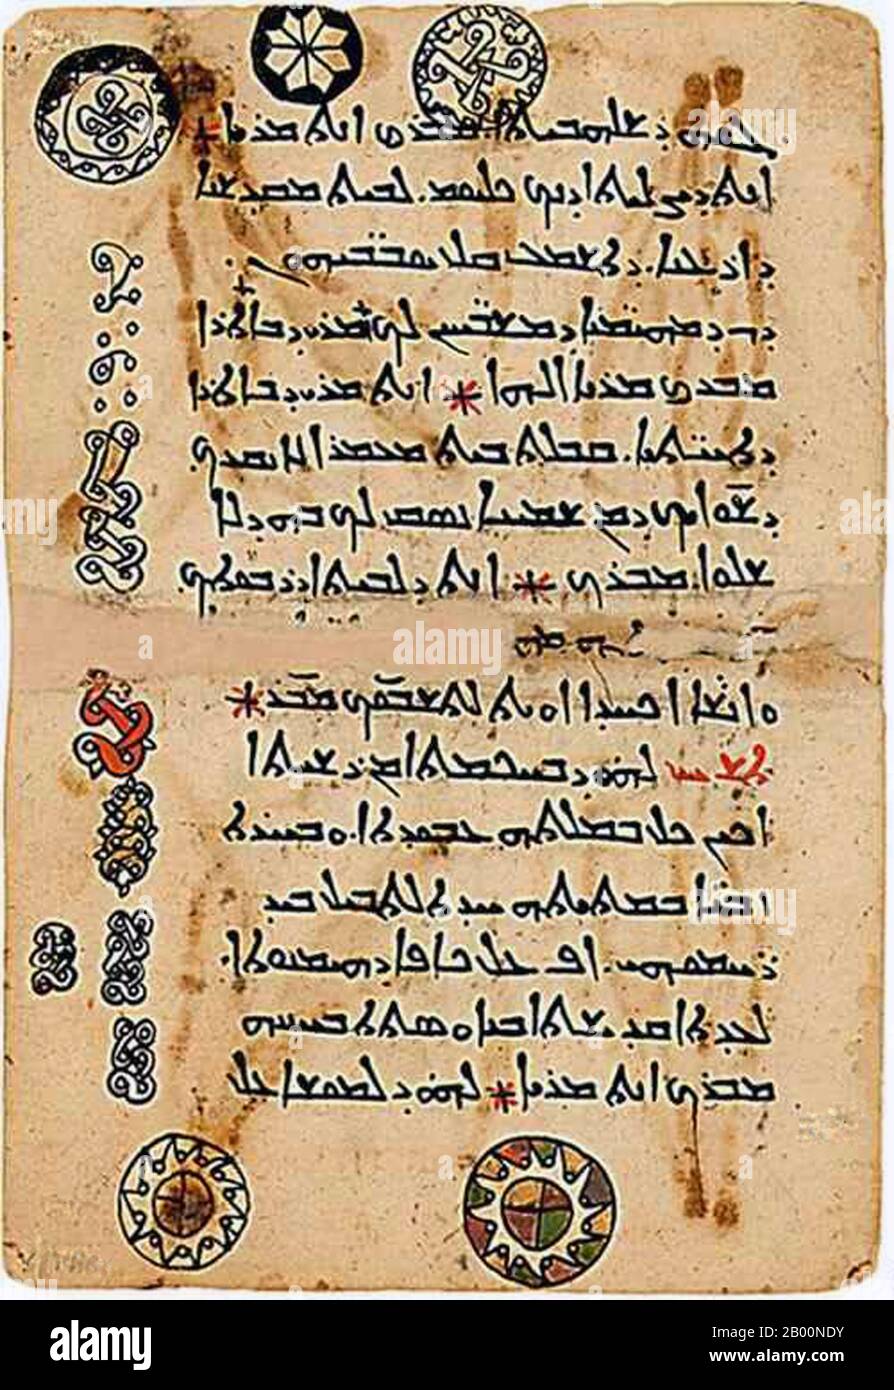 Egypte: Script syriaque. Mont Sinaï, XIe siècle. Syriac (ܠܫܢܐ ܣܘܪܝܝܐ Leššānā Suryāyā) est un dialecte d'araméen moyen qui était autrefois parlé à travers une grande partie du Croissant fertile et de l'Arabie orientale. Ayant d'abord paru comme un script au 1er siècle ce après avoir été parlé comme une langue non écrite pendant cinq siècles, le syriaque classique est devenu une langue littéraire majeure dans tout le Moyen-Orient du 4e au 8e siècles, la langue classique d'Edessa, Conservé dans un grand corps de littérature syriaque. Banque D'Images